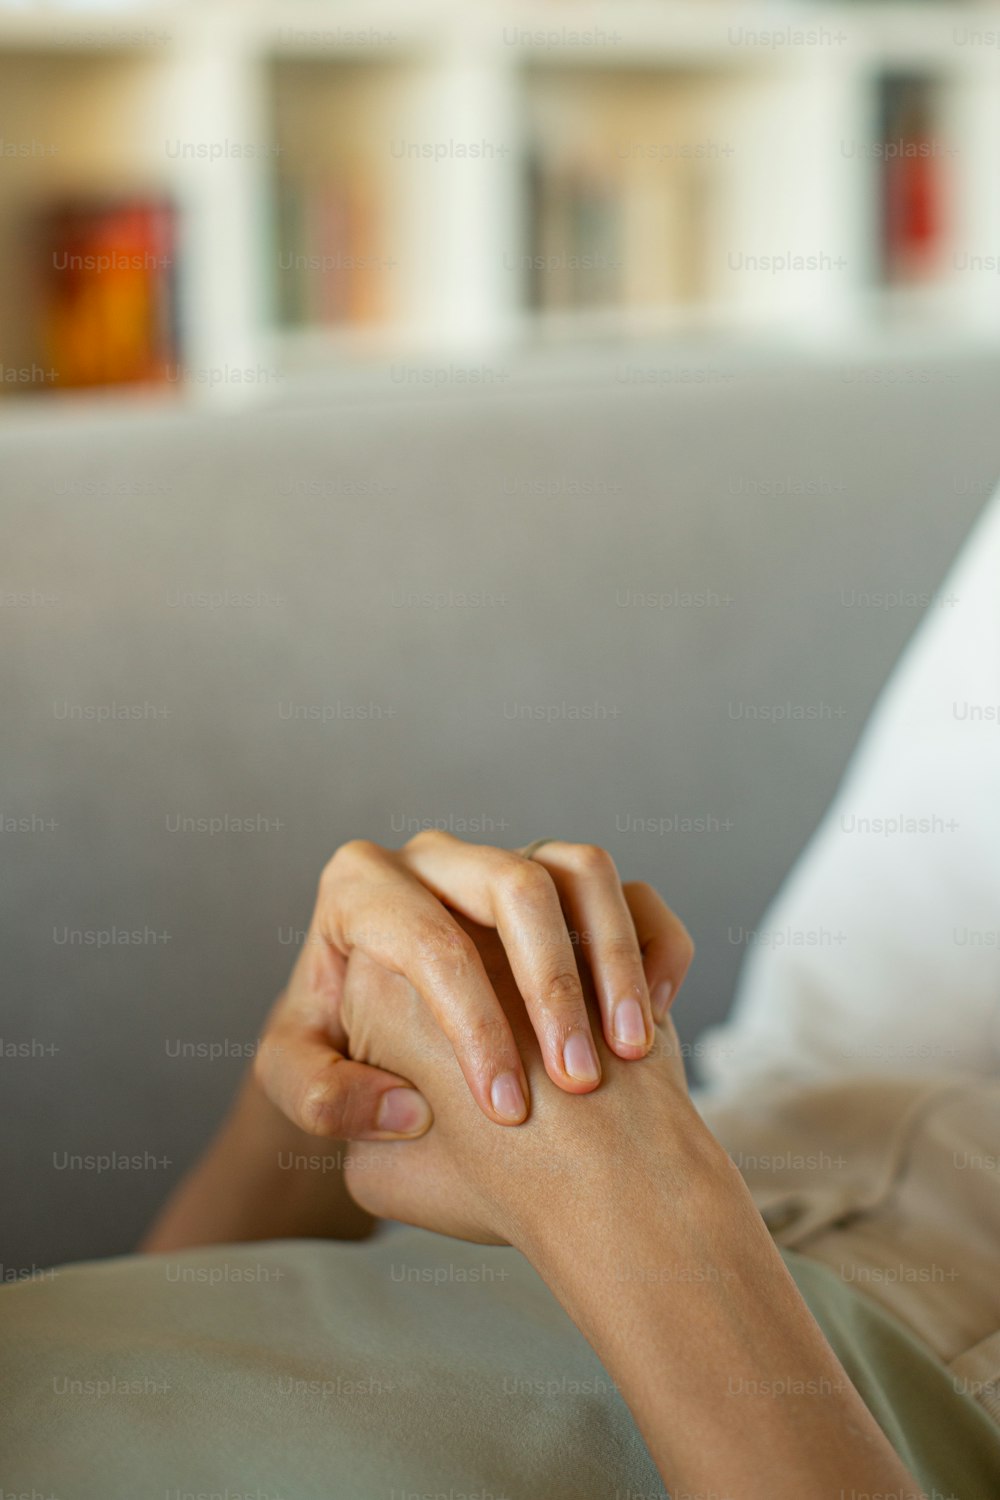 Una persona acostada en un sofá con la mano apoyada en la almohada